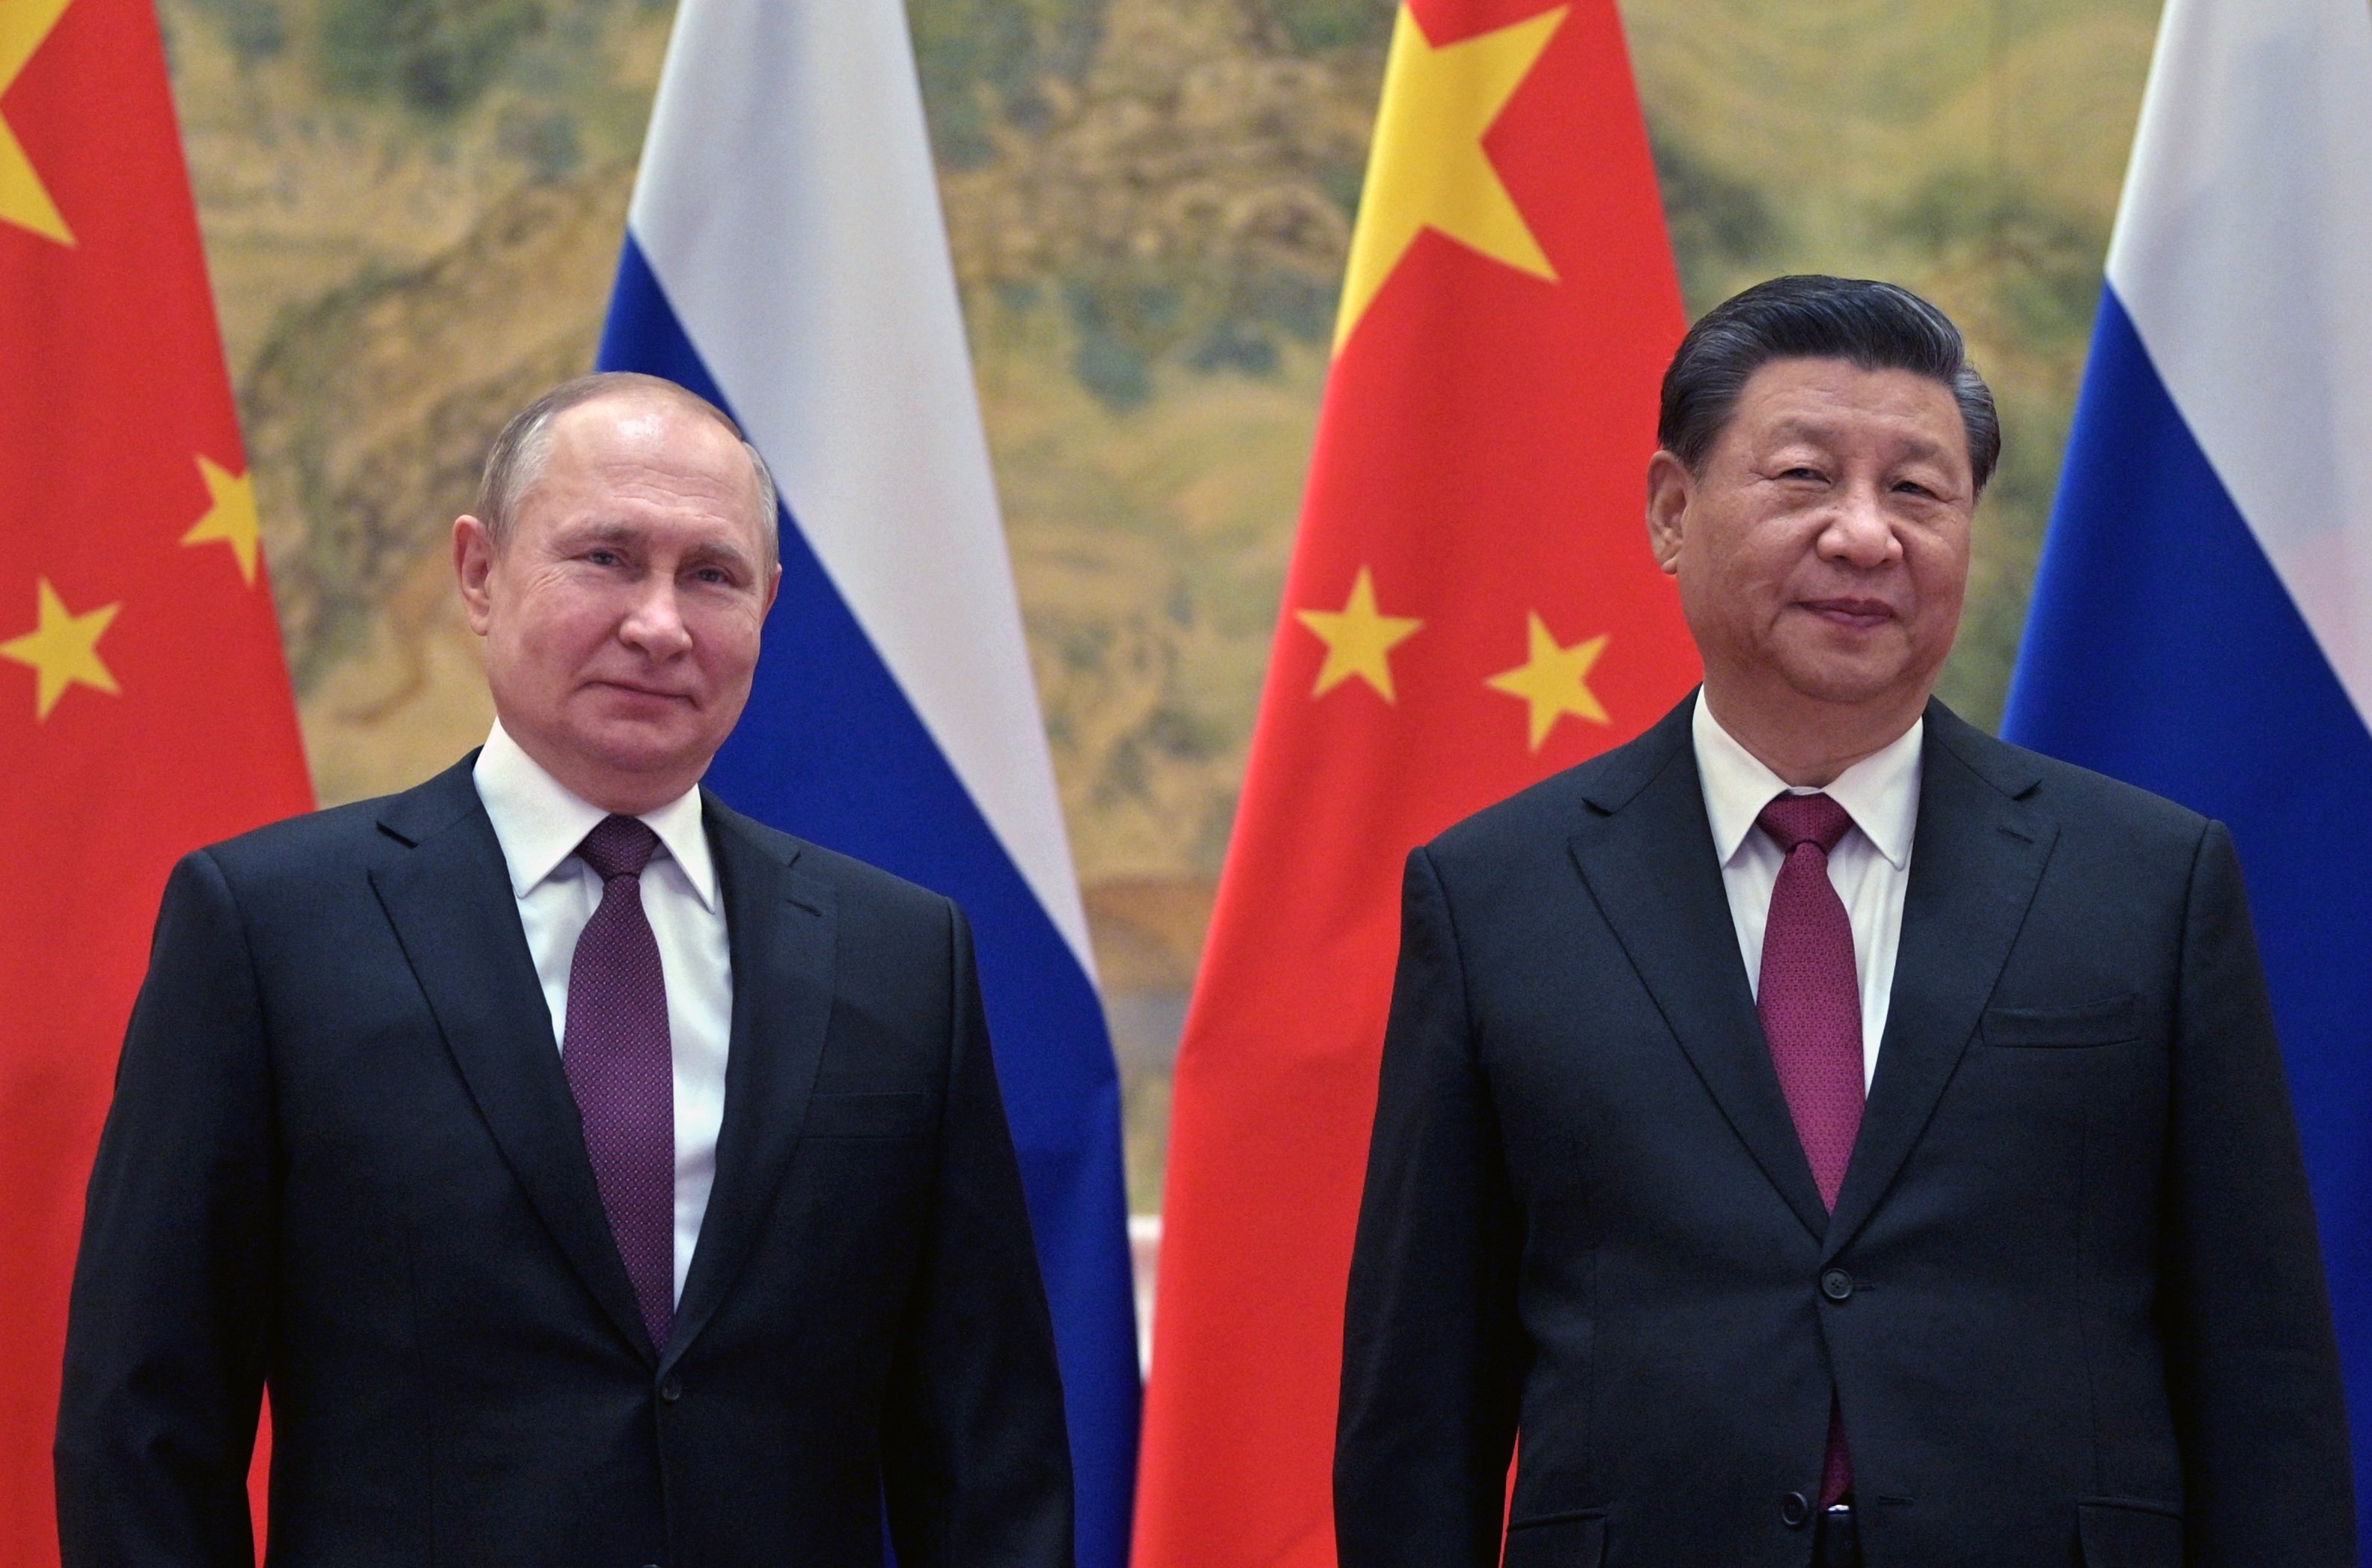 Guerra en Ucrania | Rusia pide ayuda a China: necesita armas y apoyo económico